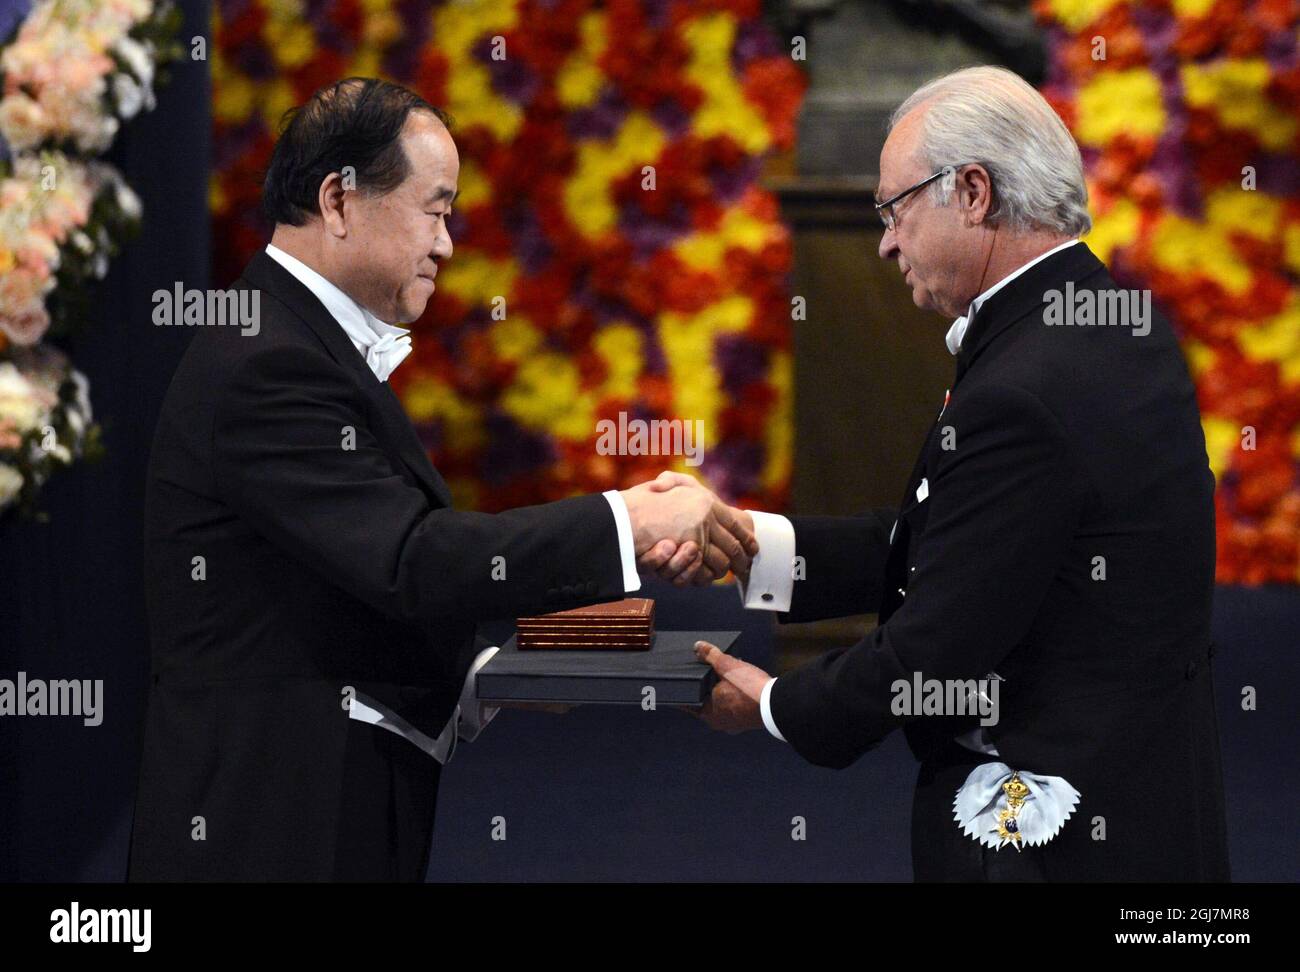 ESTOCOLMO 20121210 Mo Yan de China recibe el Premio Nobel de Literatura 2012 del Rey Carl Gustaf durante la Ceremonia del Premio Nobel en la Sala de Conciertos de Estocolmo Suecia, el 10 de diciembre de 2012. Foto Henrik Montgomery / SCANPIX kod 10060 Foto de stock